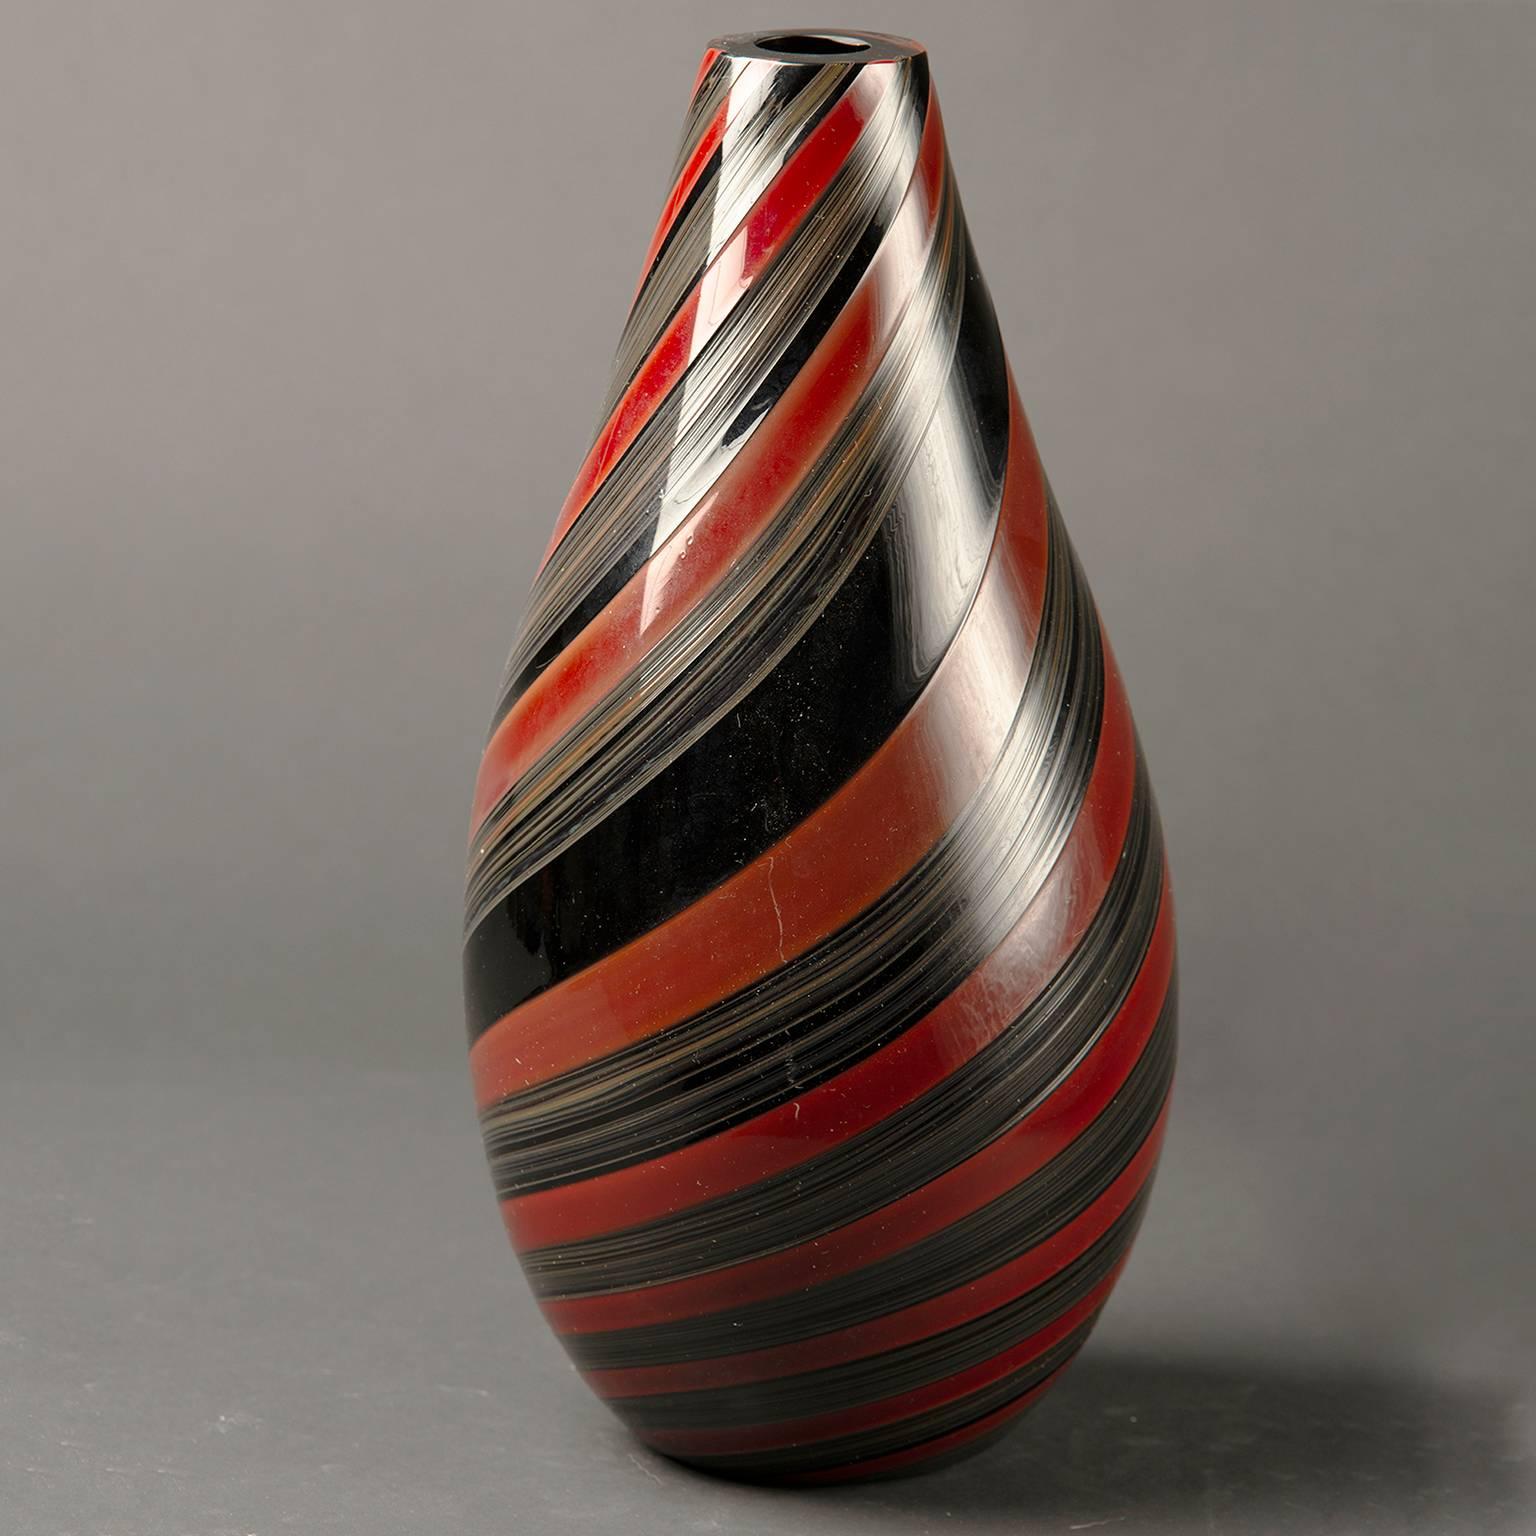 Signé Seguso Murano sur le dessous de la base, ce grand vase en verre lourd datant des années 1980 présente des rayures noires et rouges.
 